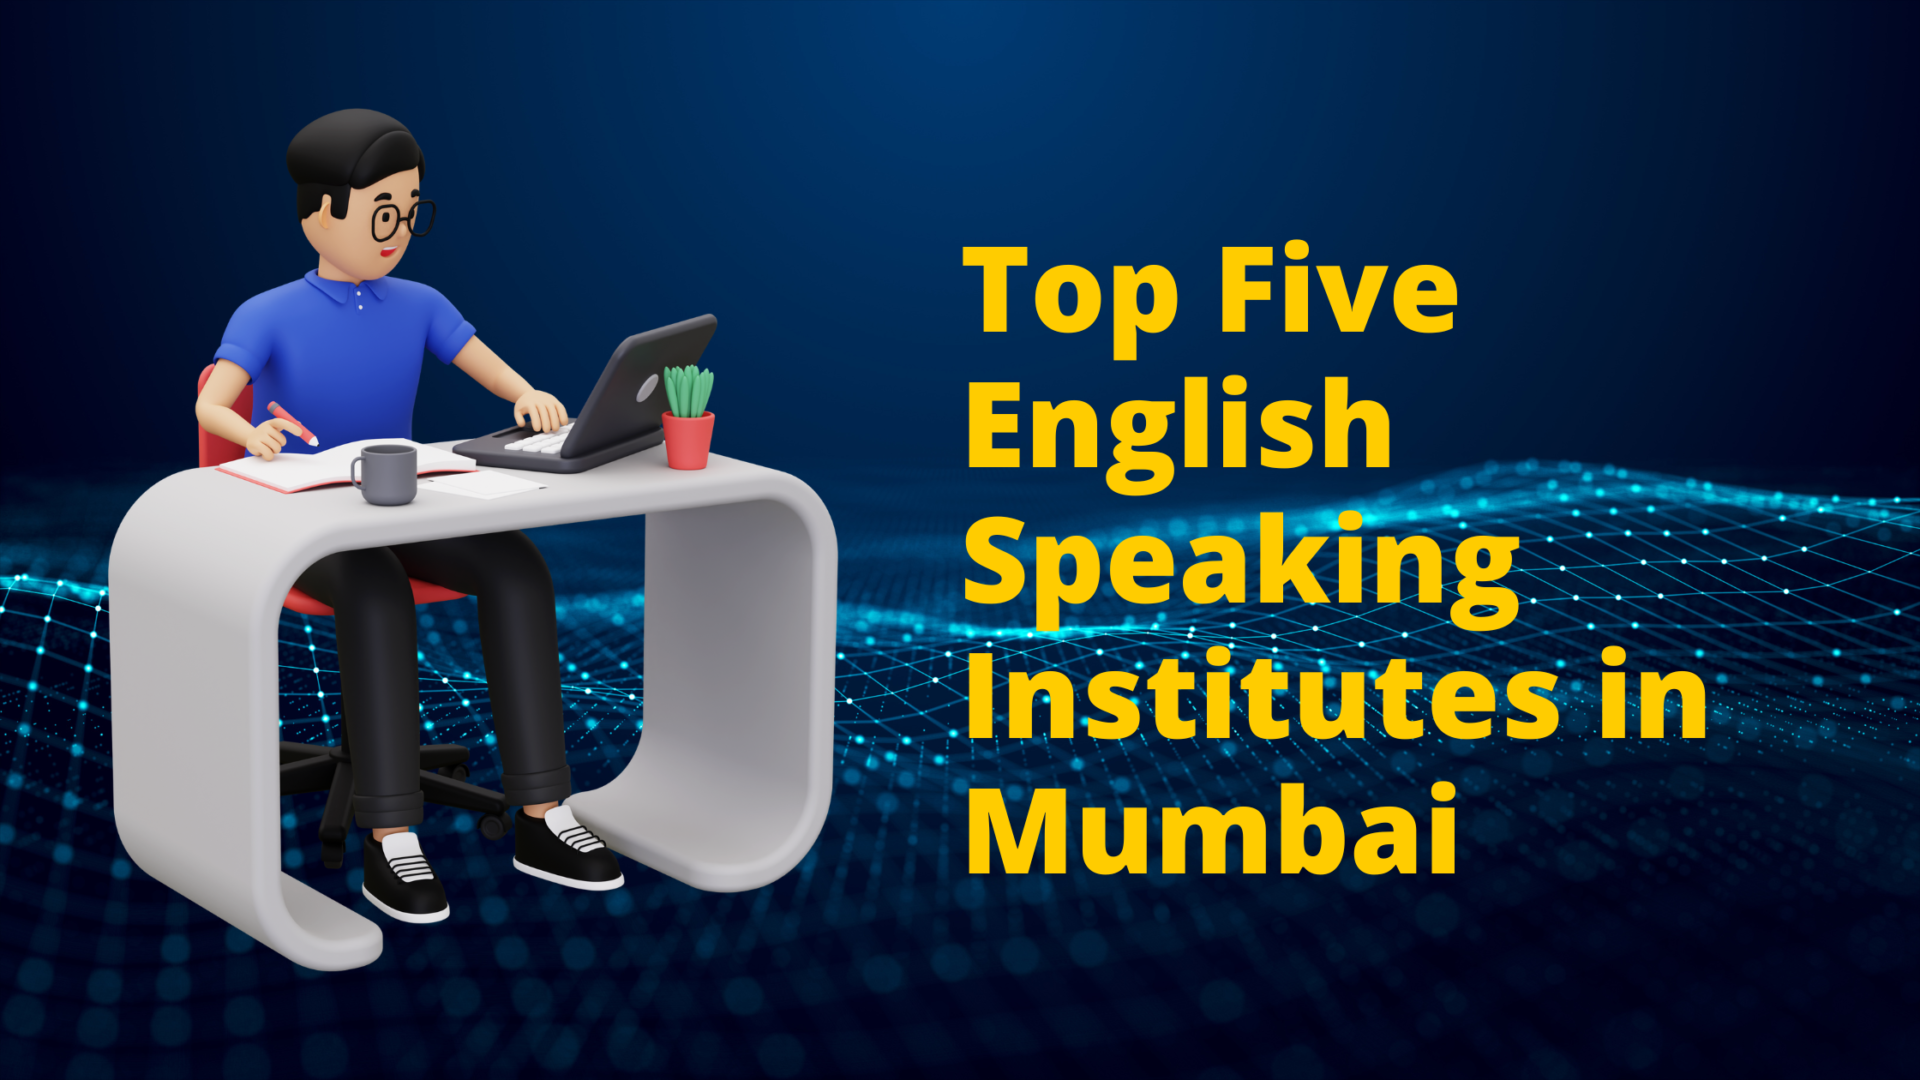 Top Five English Speaking Institutes in Mumbai